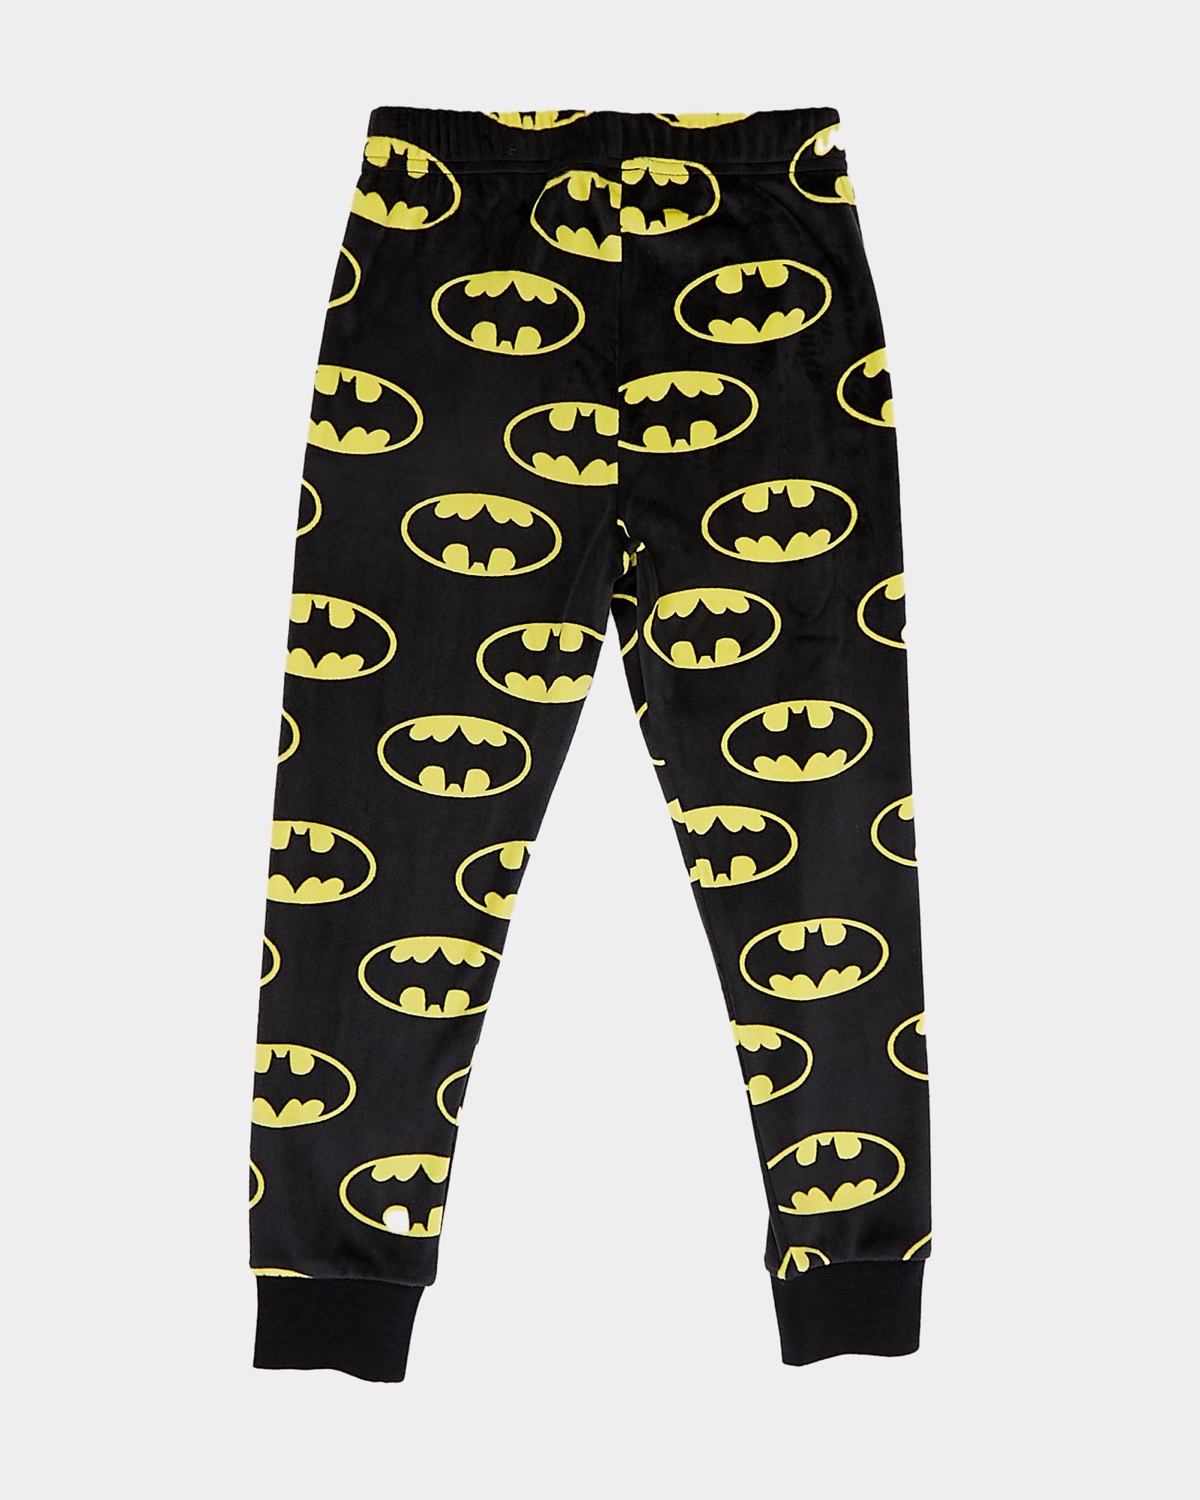 Batman Pajama Bottoms Size Small  Pajamas Batman pajama pants Batman  pyjamas